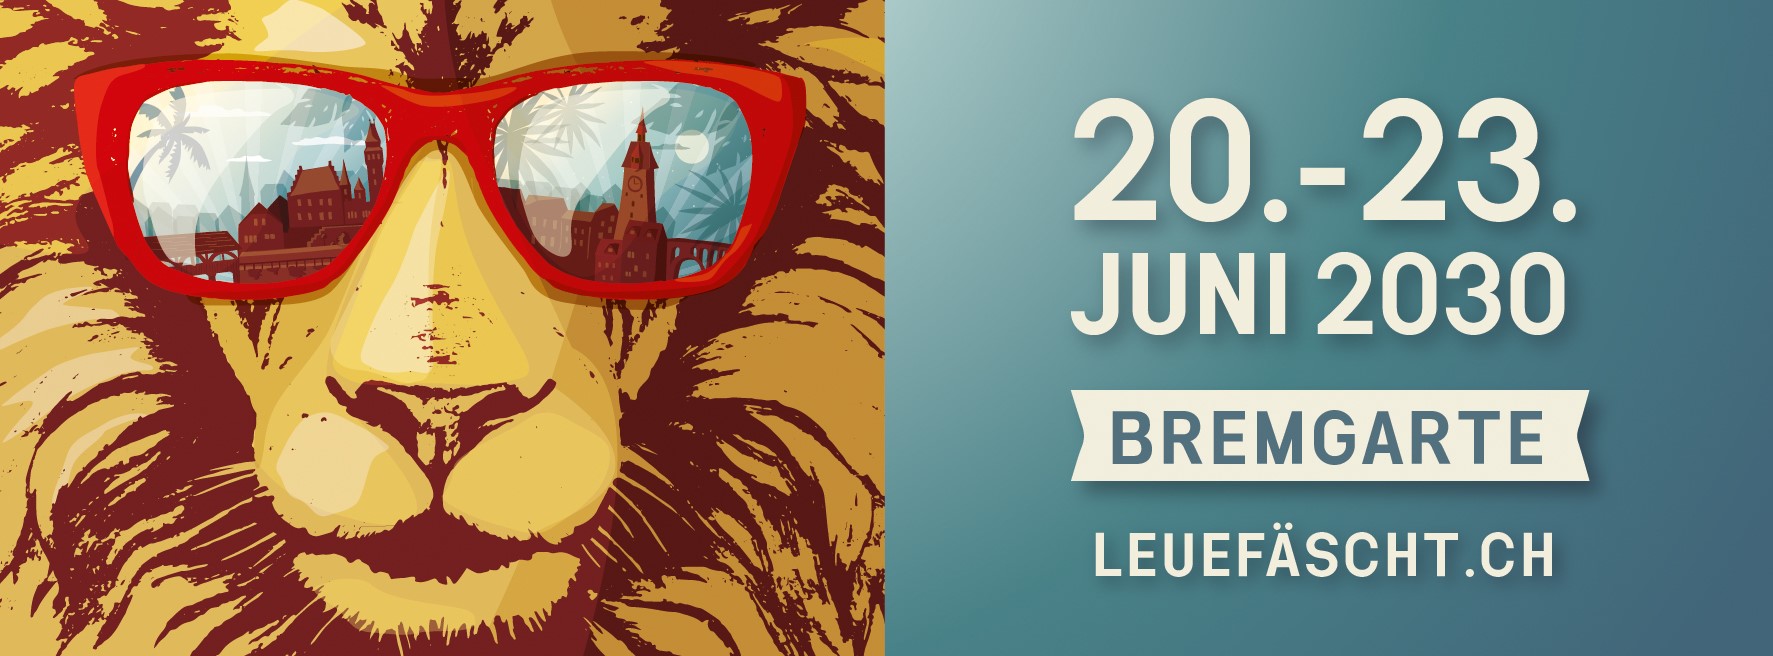 Posterbild des Leuefäscht-Löwen mit seiner coolen roten Sonnenbrille, dem Schriftzug und dem Datum des nächsten Leuefäschtes. Kein Link vorhanden.